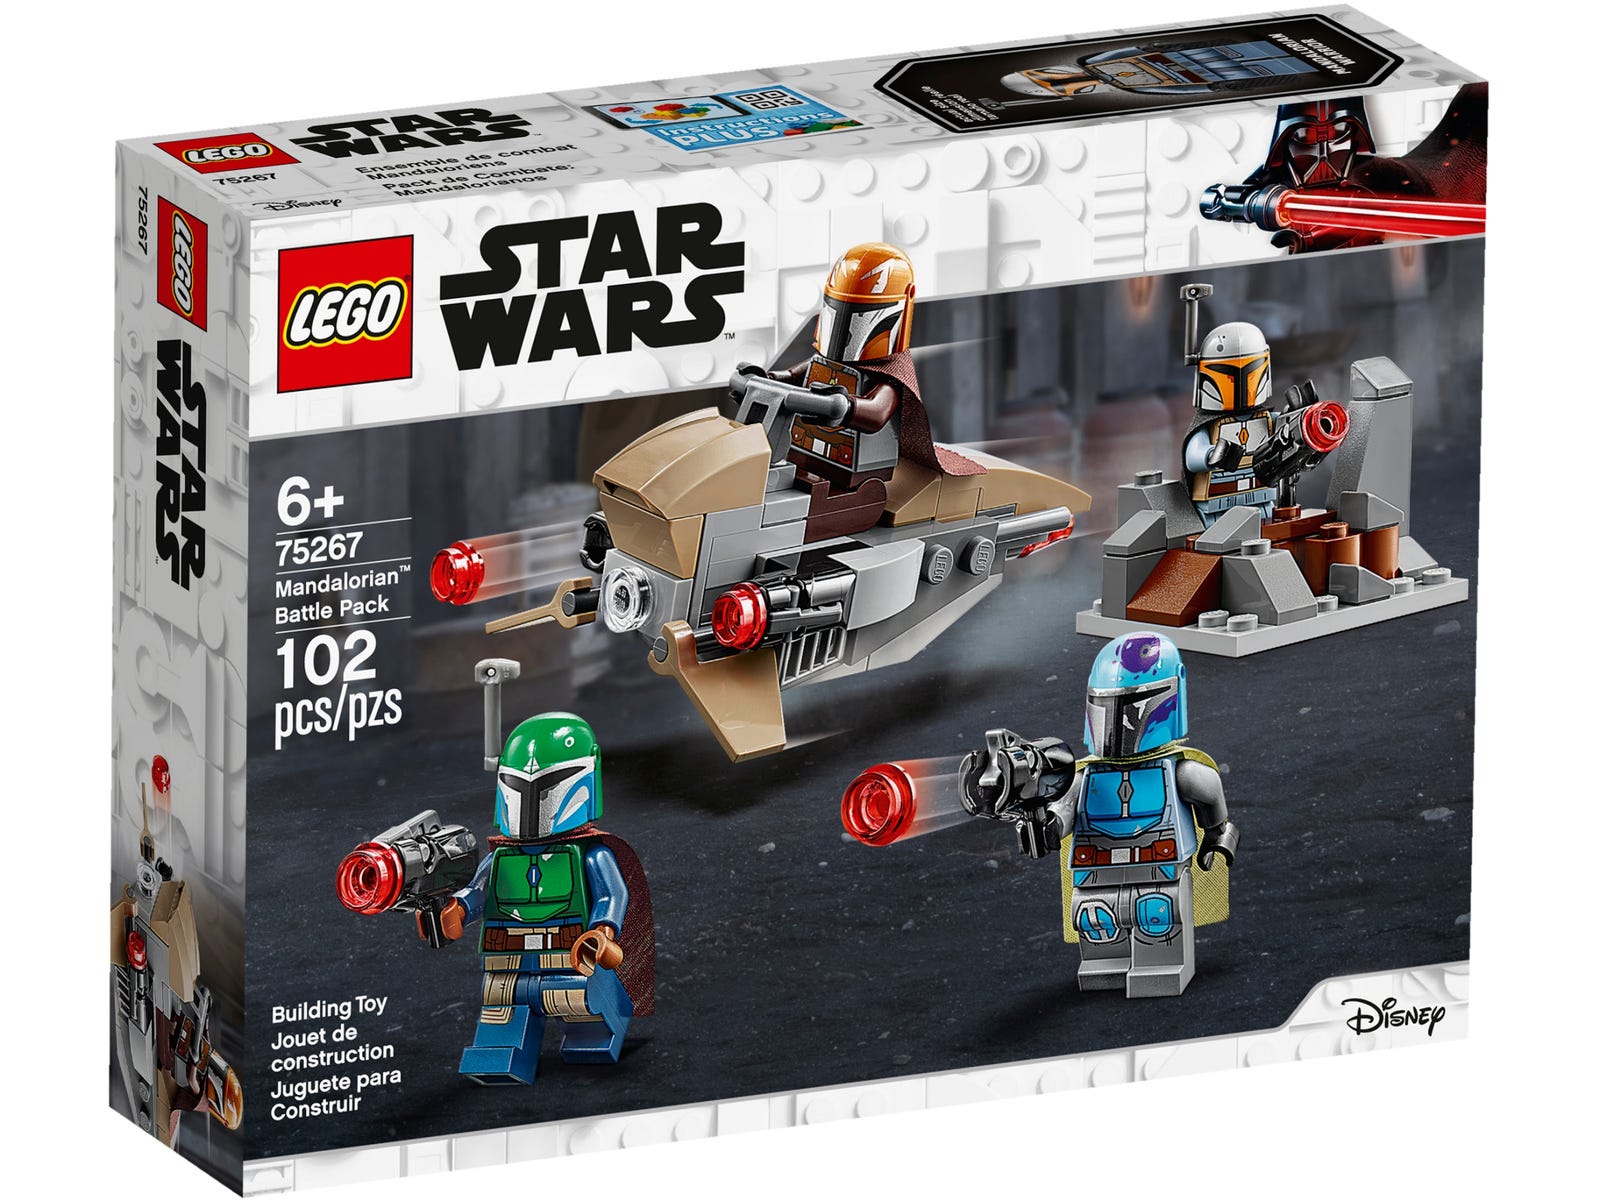 LEGO Star Wars Mandalorianer™ Battle Pack (75267) - im GOLDSTIEN.SHOP verfügbar mit Gratisversand ab Schweizer Lager! (5702016617139)